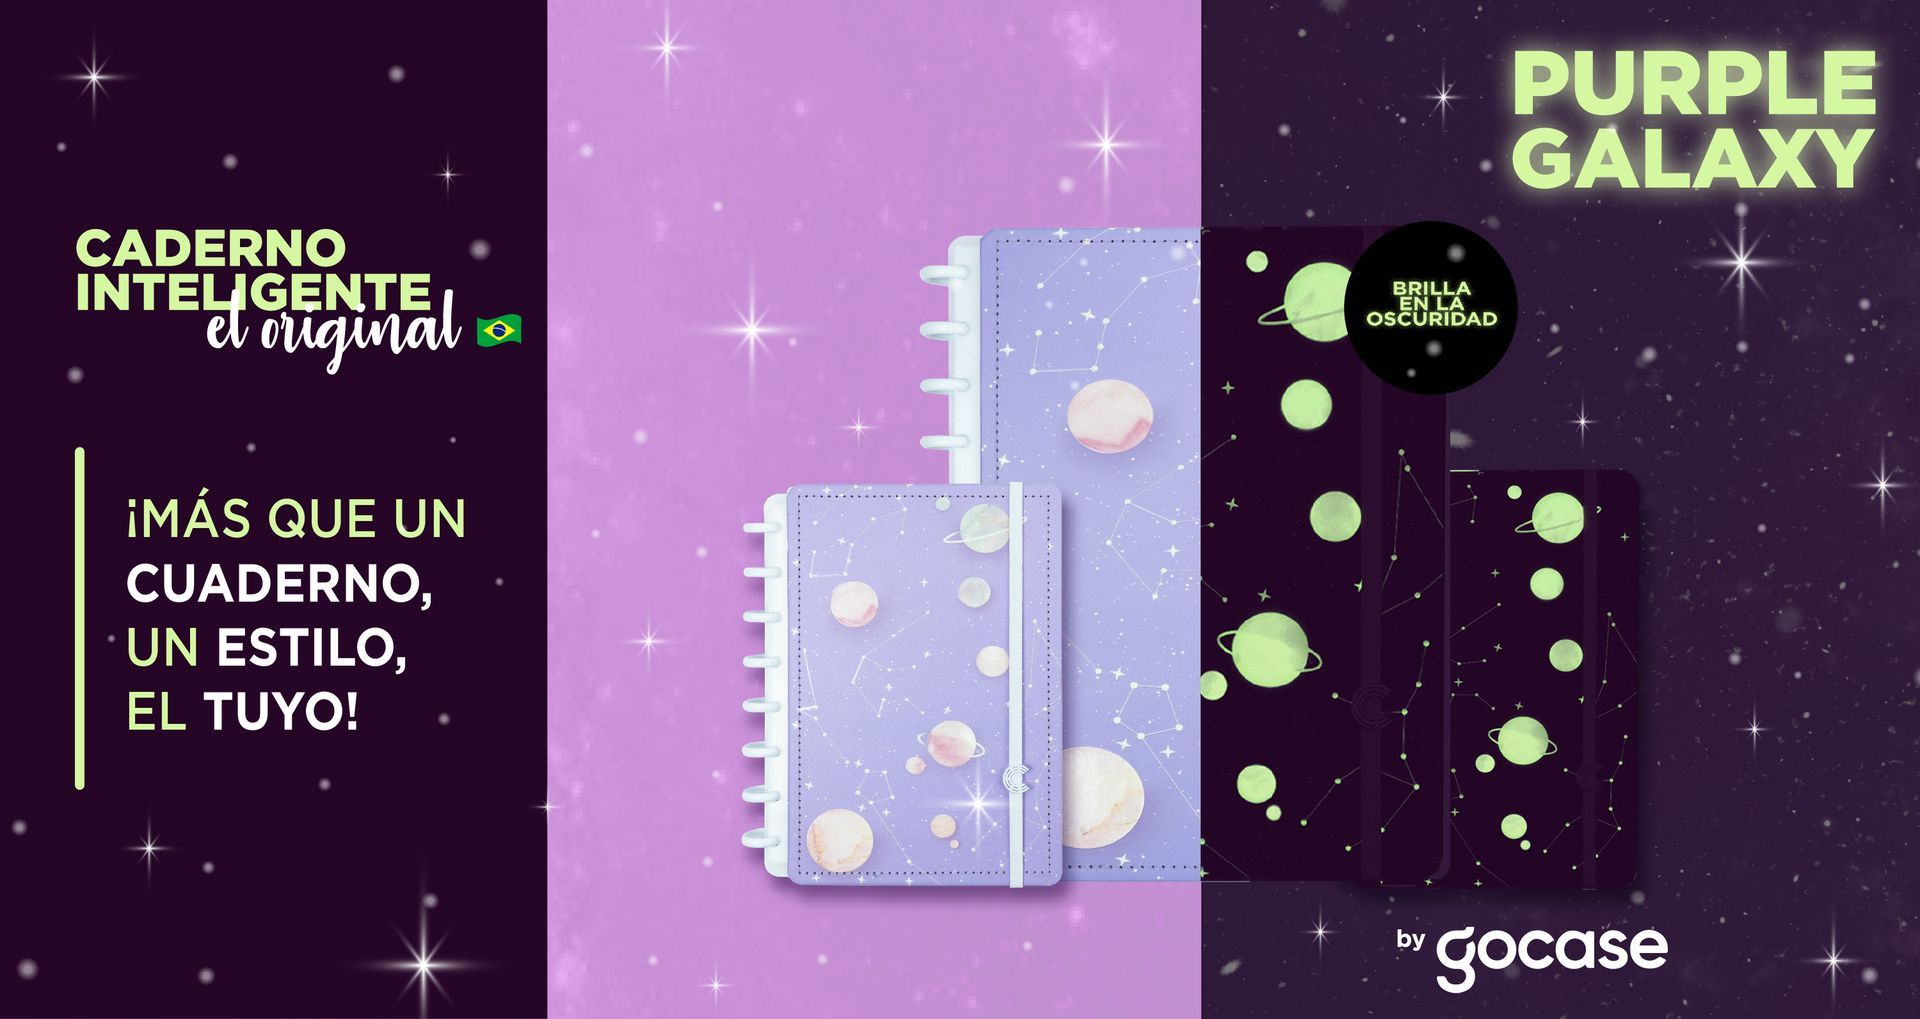 Cuaderno Inteligente by GOCASE - Purple Galaxy